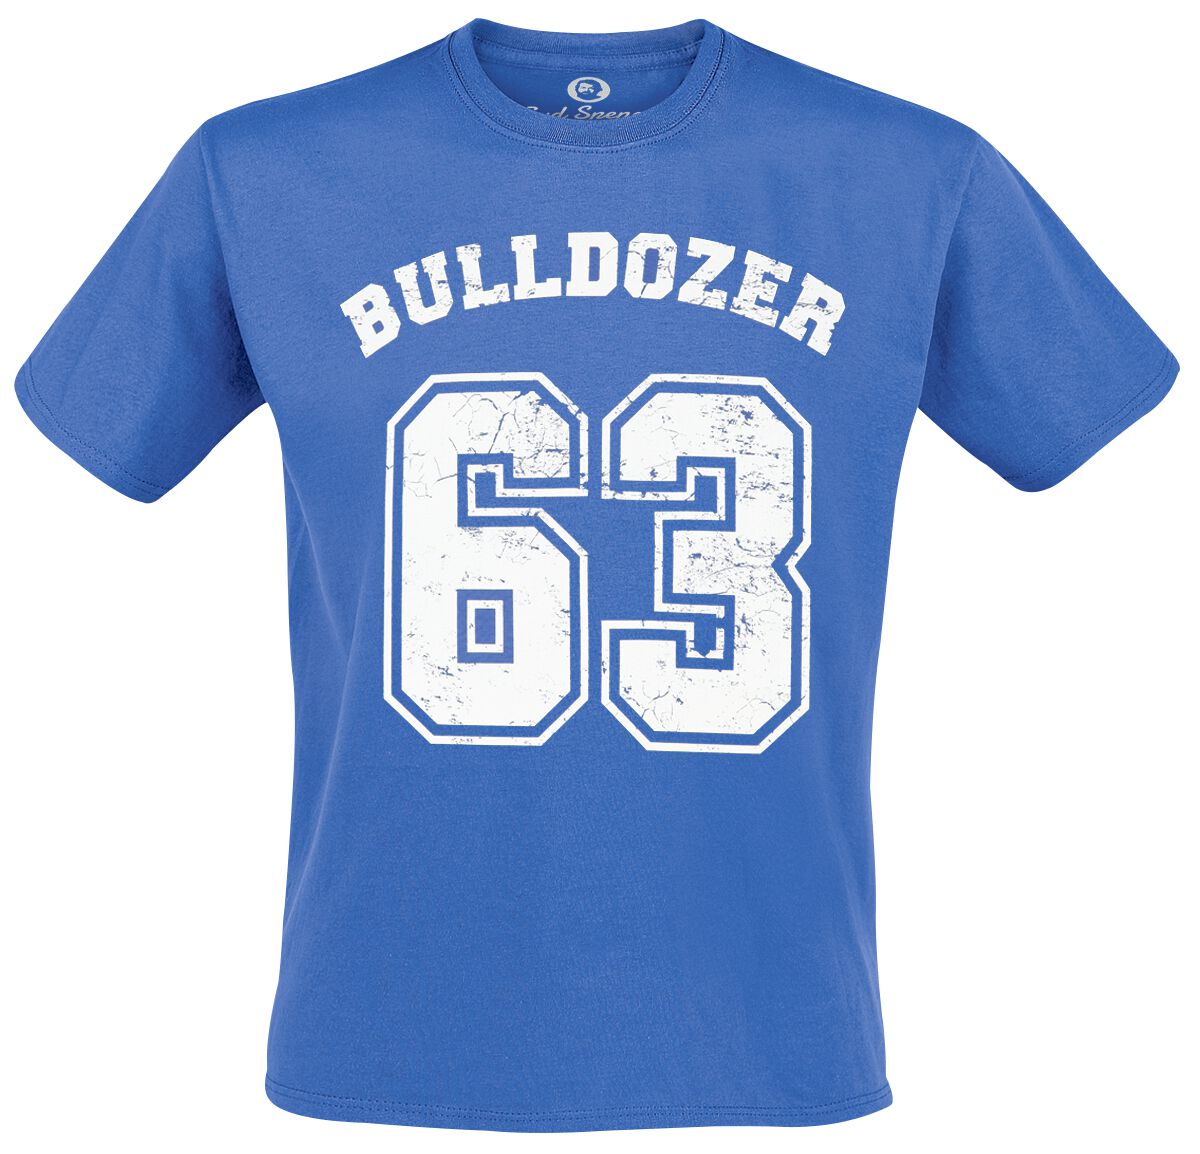 Bud Spencer T-Shirt - Bulldozer - M bis 5XL - für Männer - Größe XXL - blau  - Lizenzierter Fanartikel